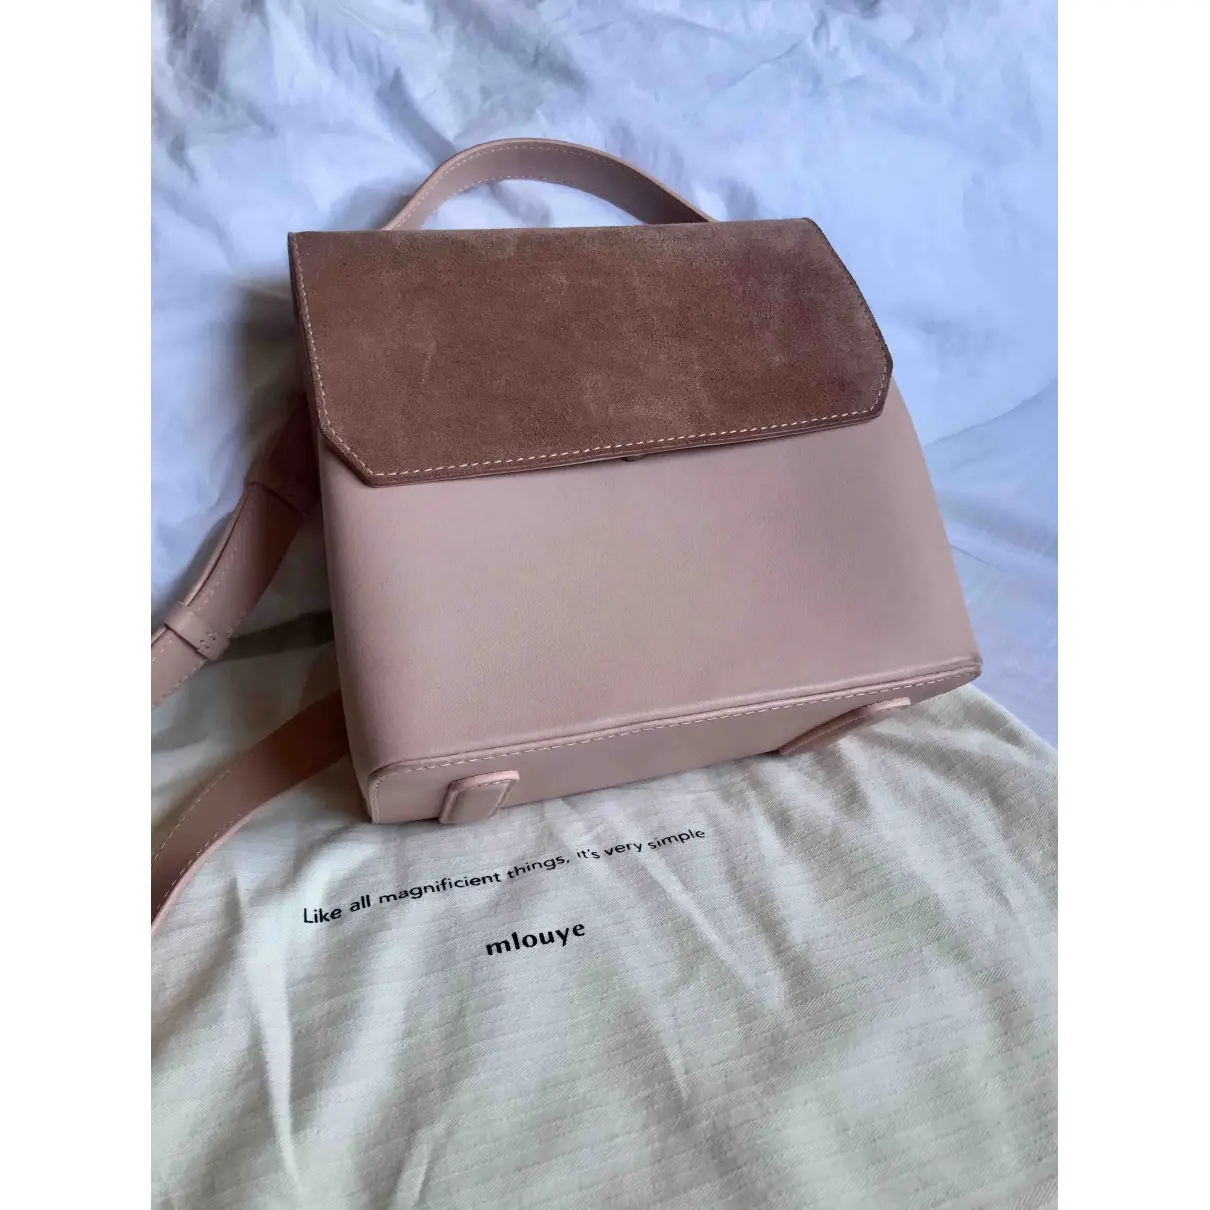 Buy Mlouye Leather handbag online